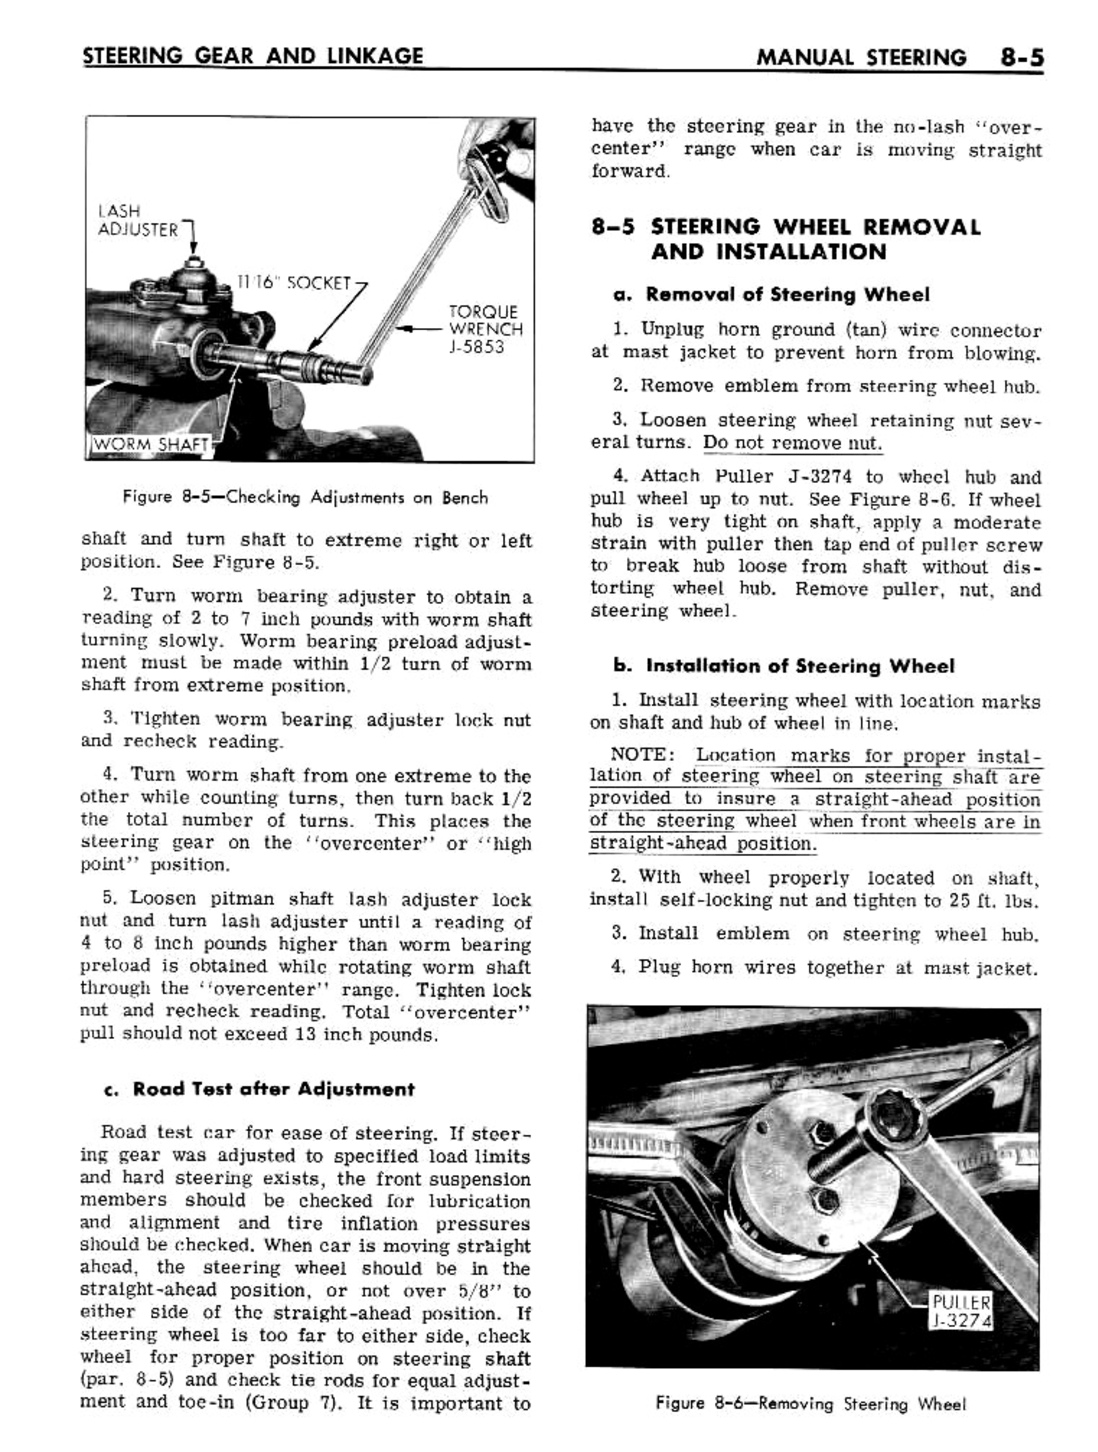 n_08 1961 Buick Shop Manual - Steering-005-005.jpg